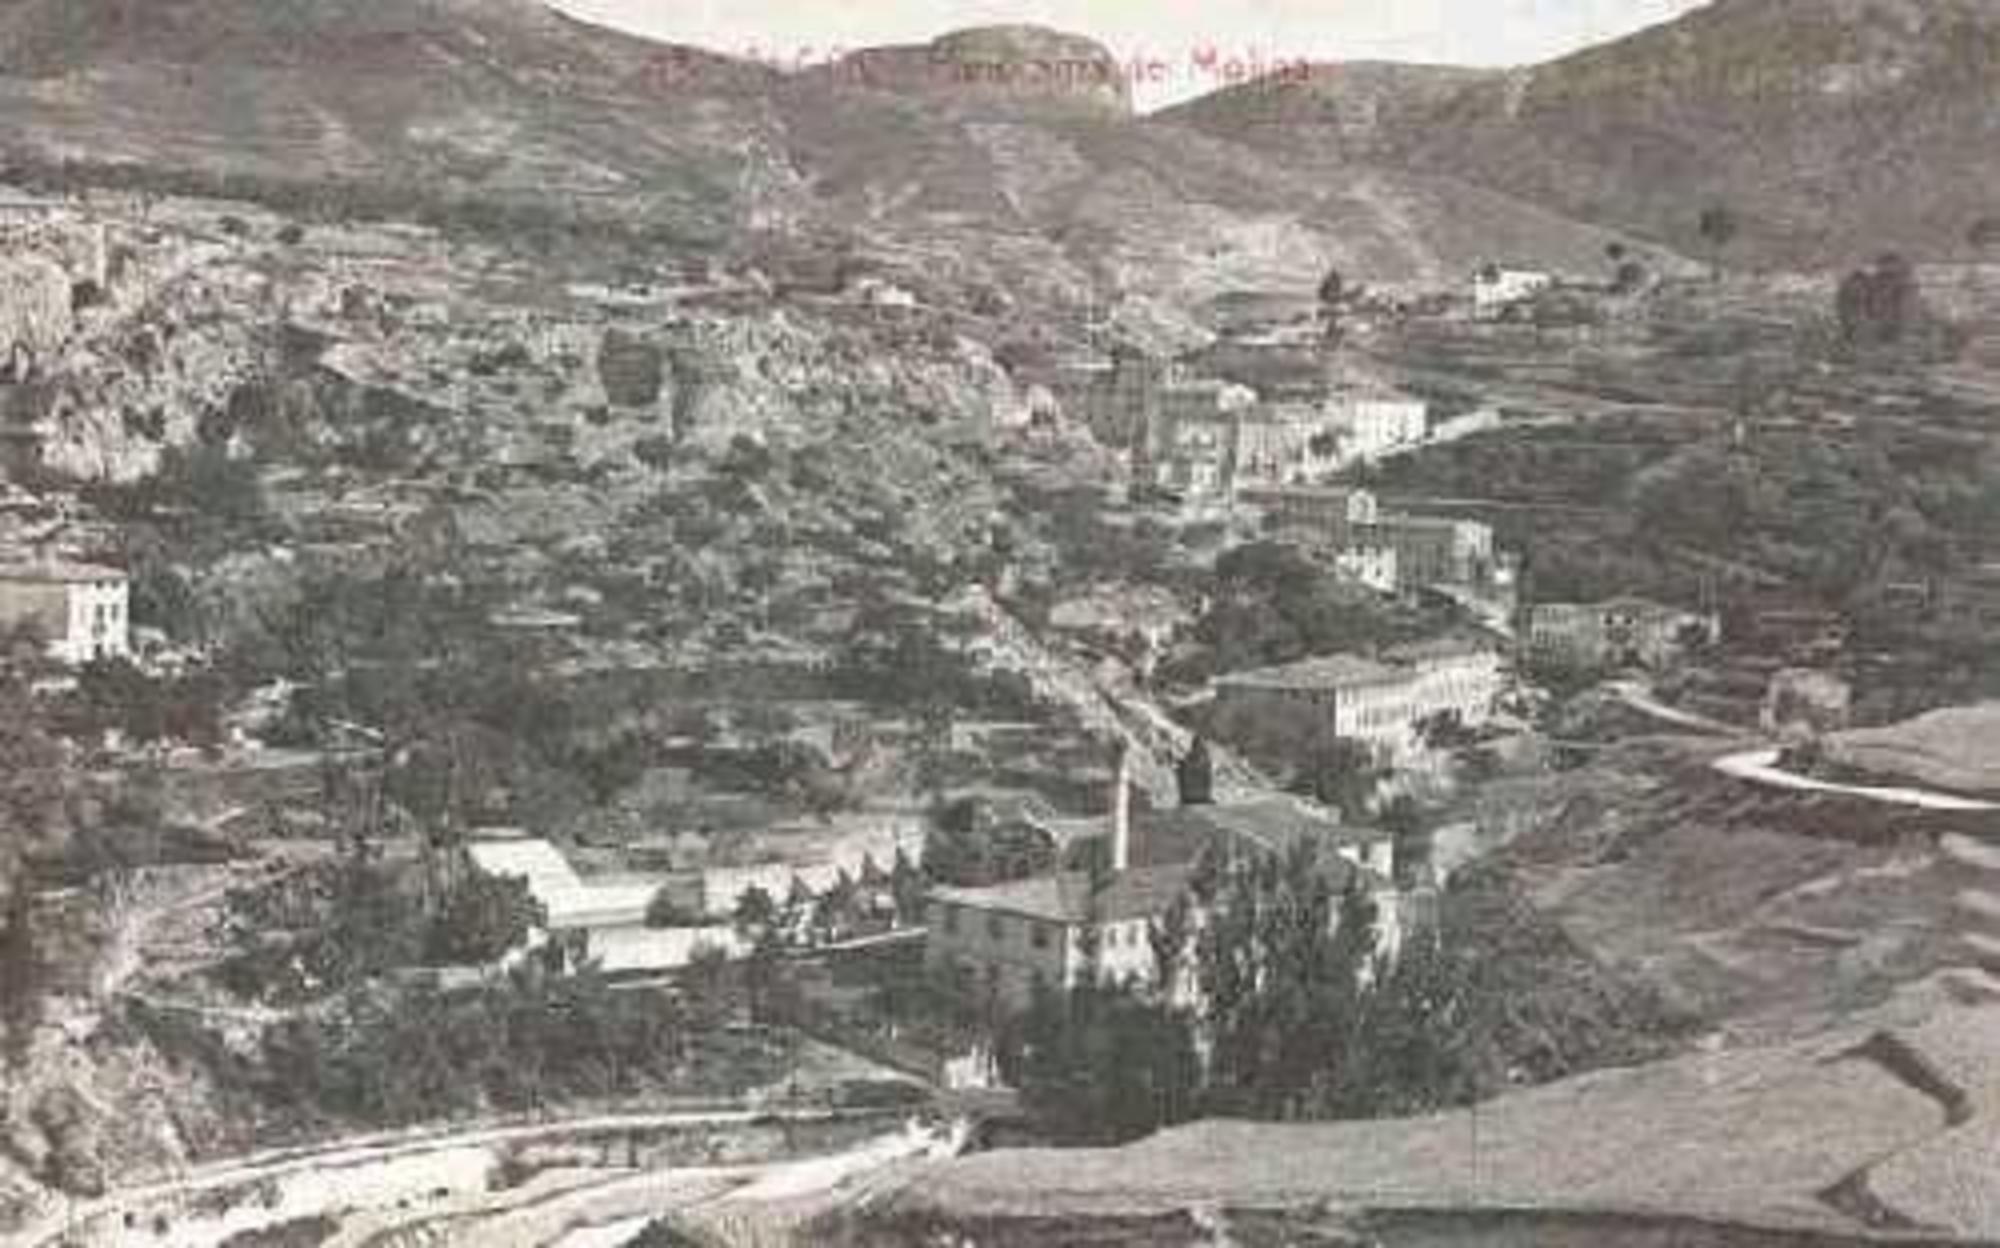 Vista de les fàbriques del Molinar d'Alcoi, el bressol industrial del País Valencià, a principis del segle XX.